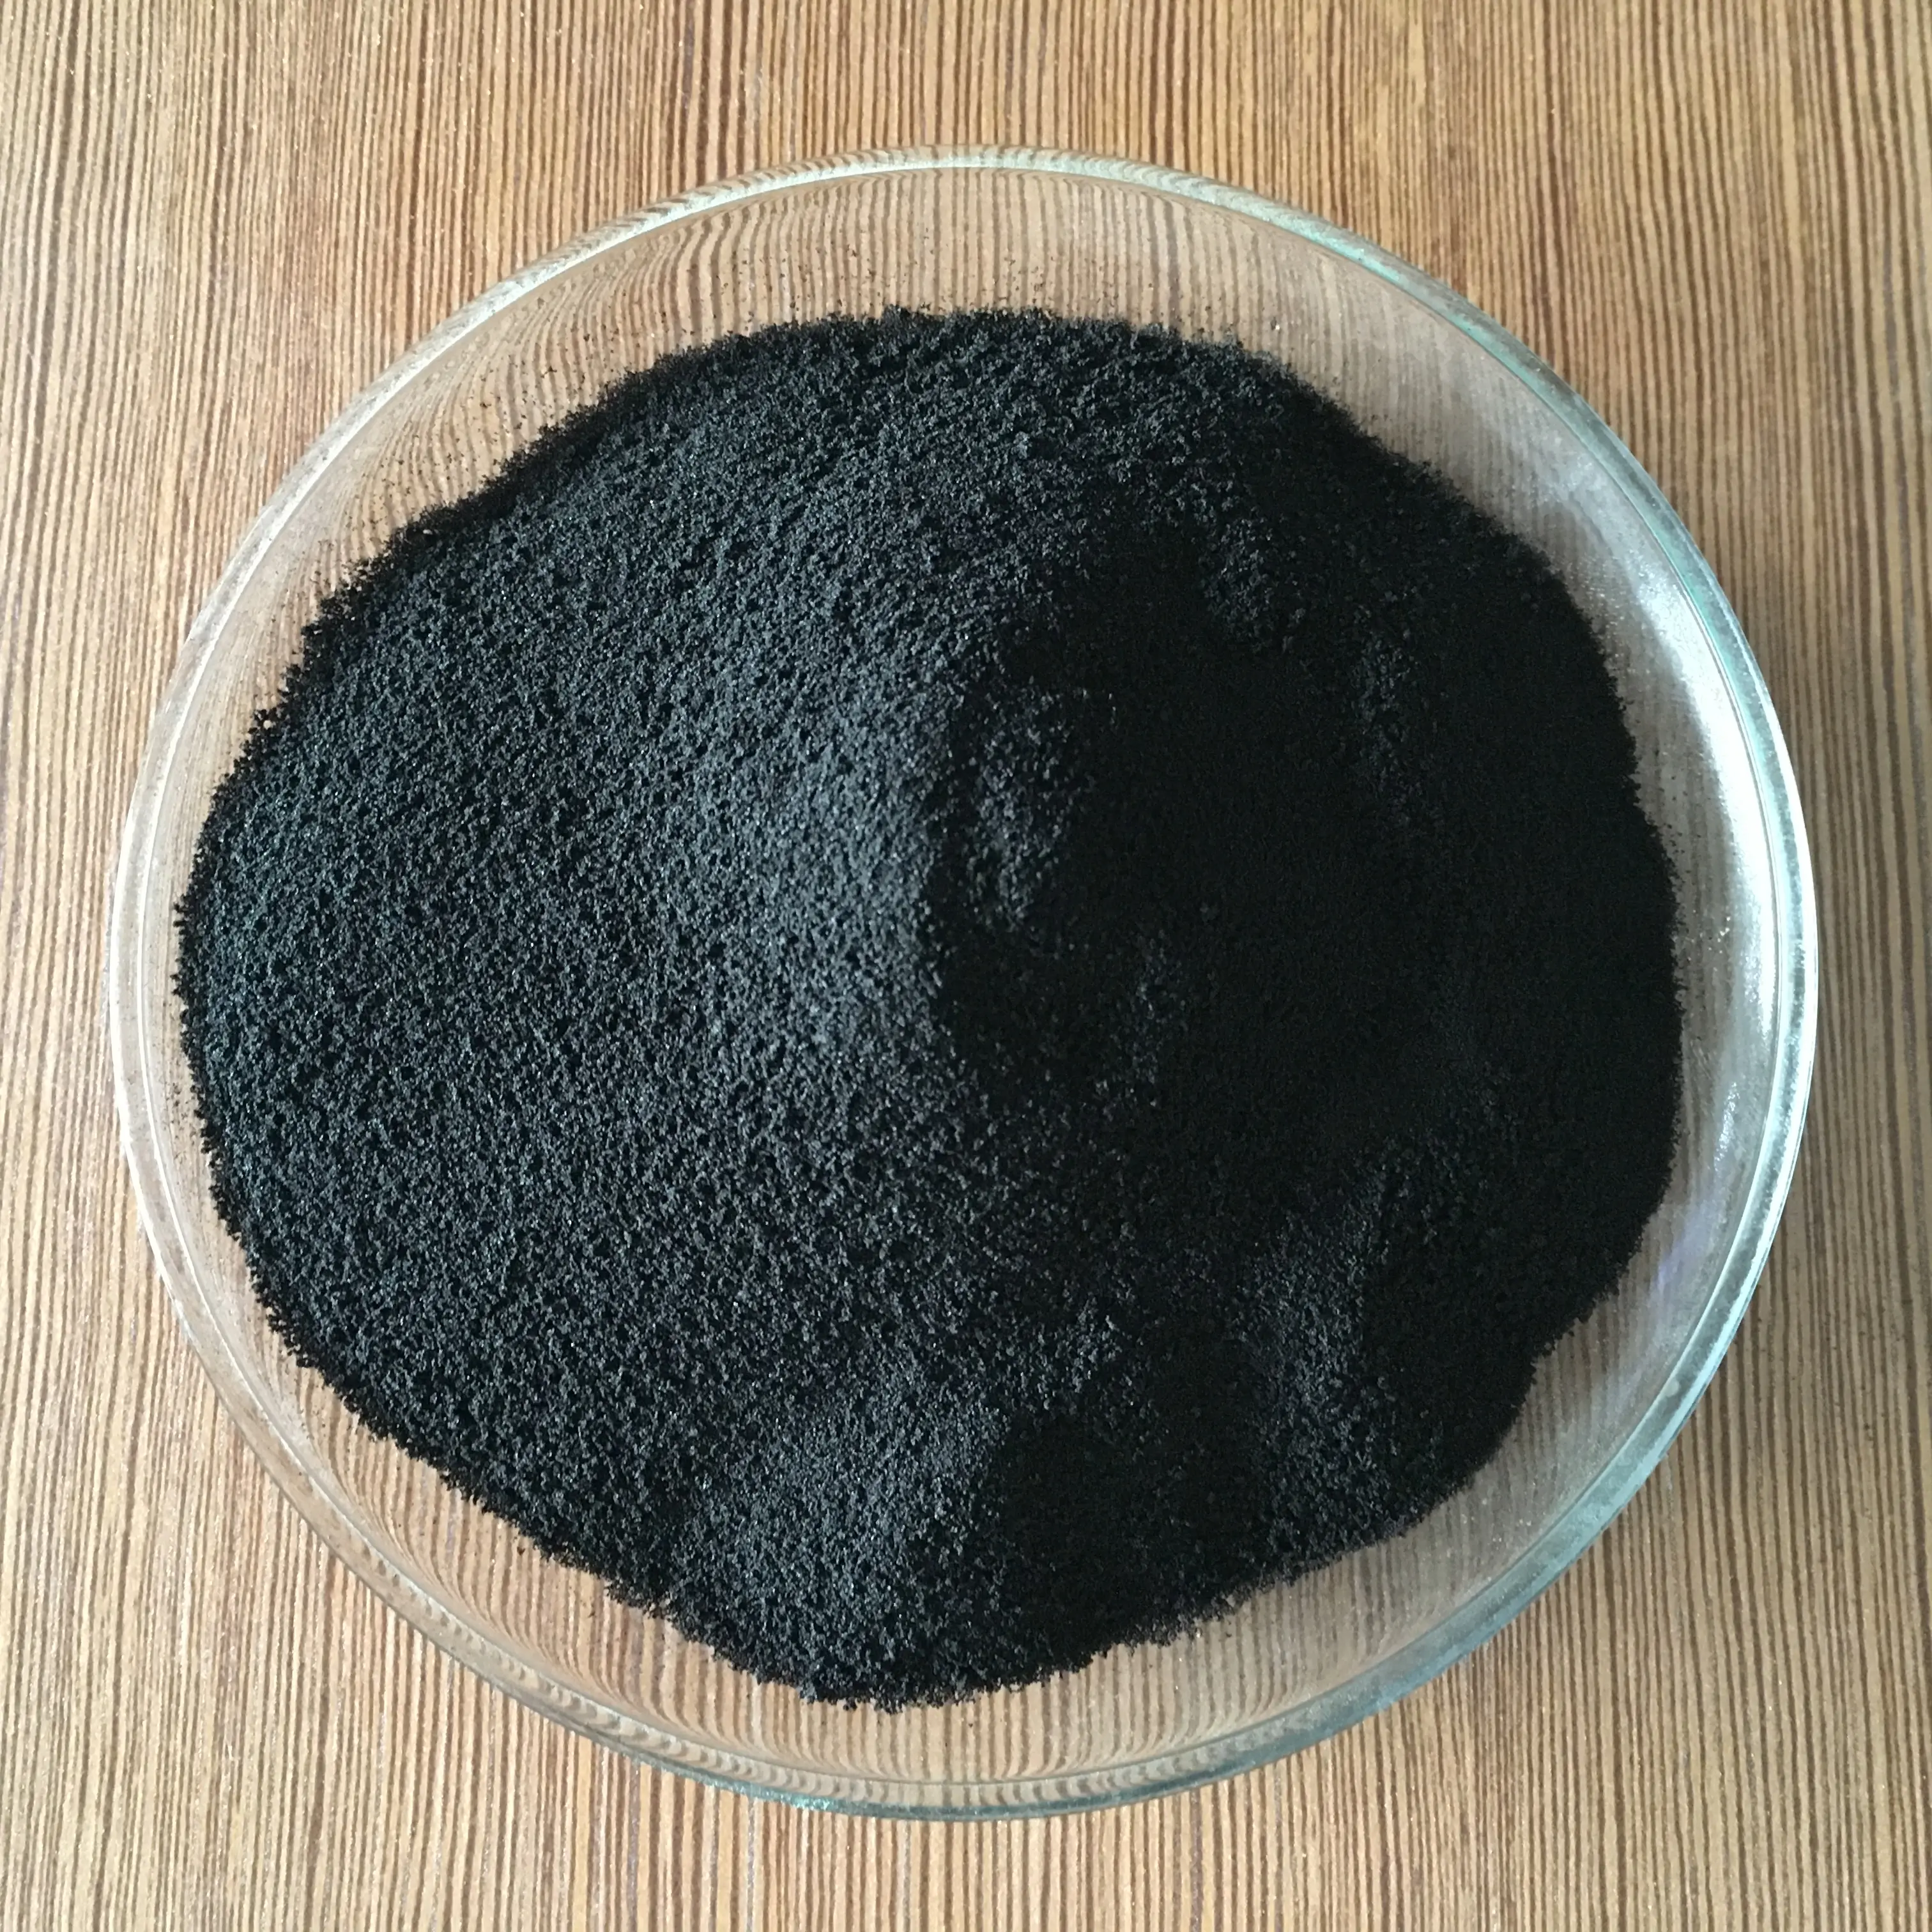 JRZ Soluble Organic Humic Acid Fertilizer Potassium Humate Shiny Flake Powder Price